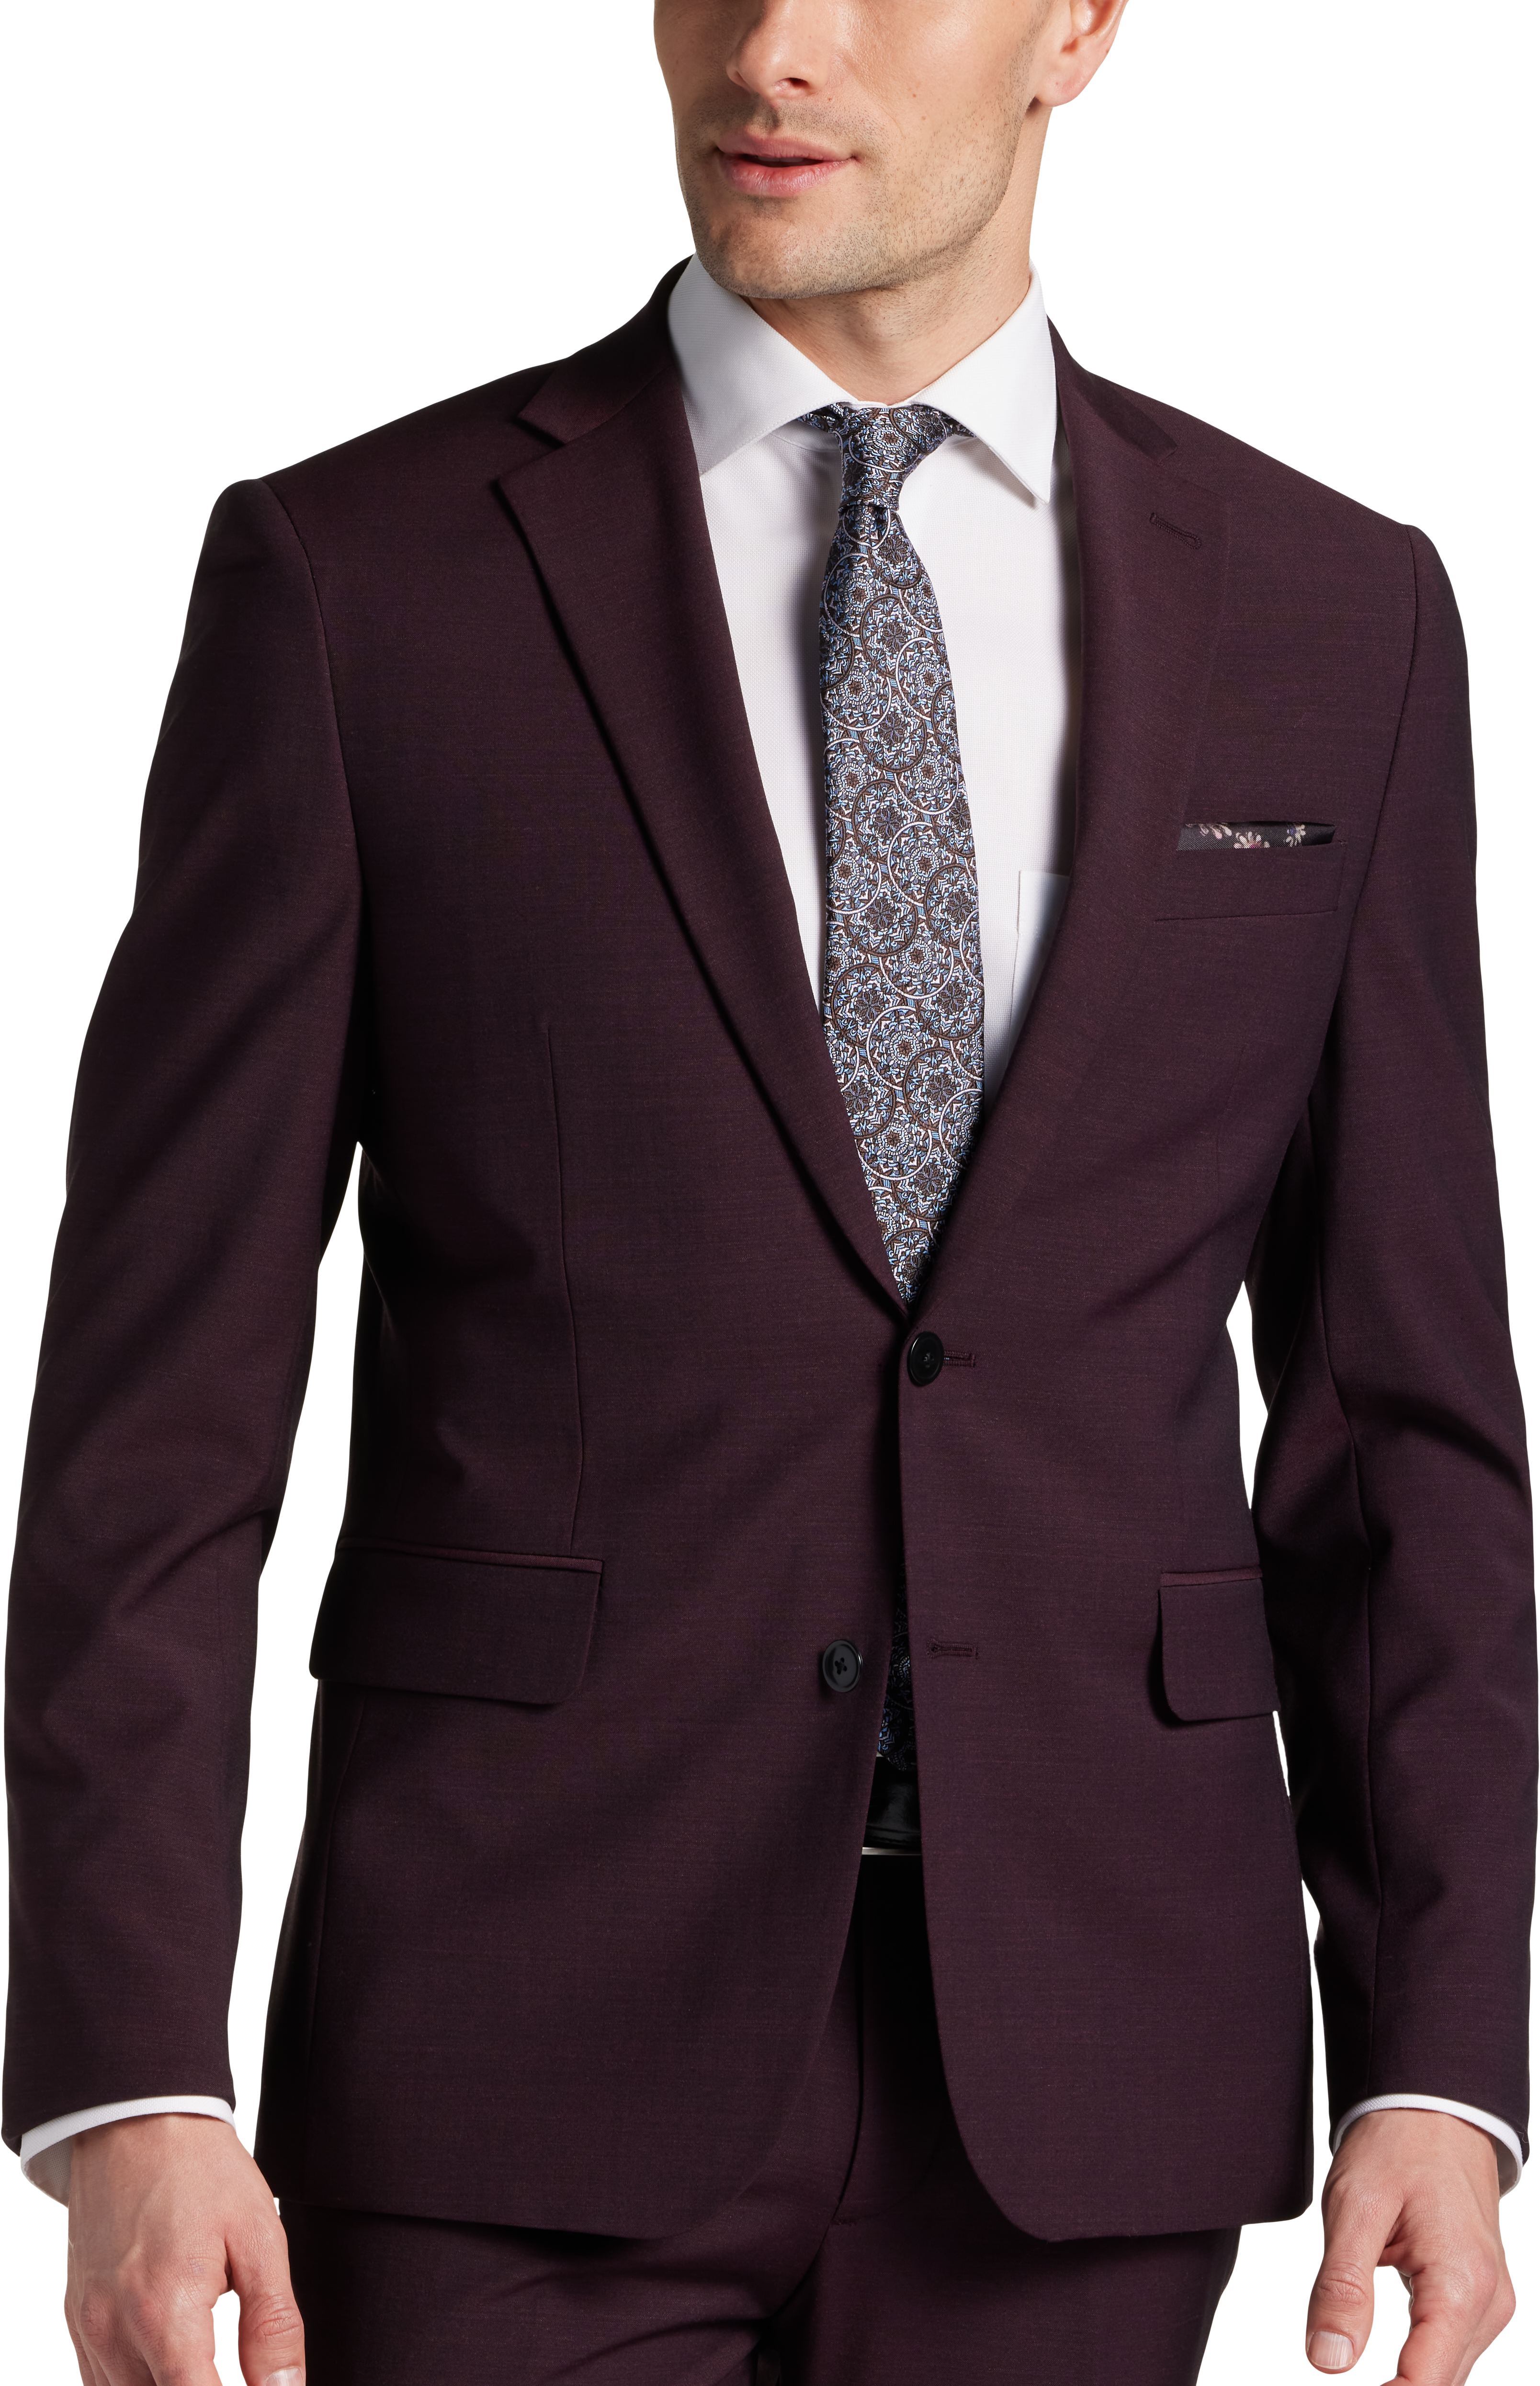 JOE Joseph Abboud Slim Fit Suit Separates Coat, Burgundy - Men's Suits ...